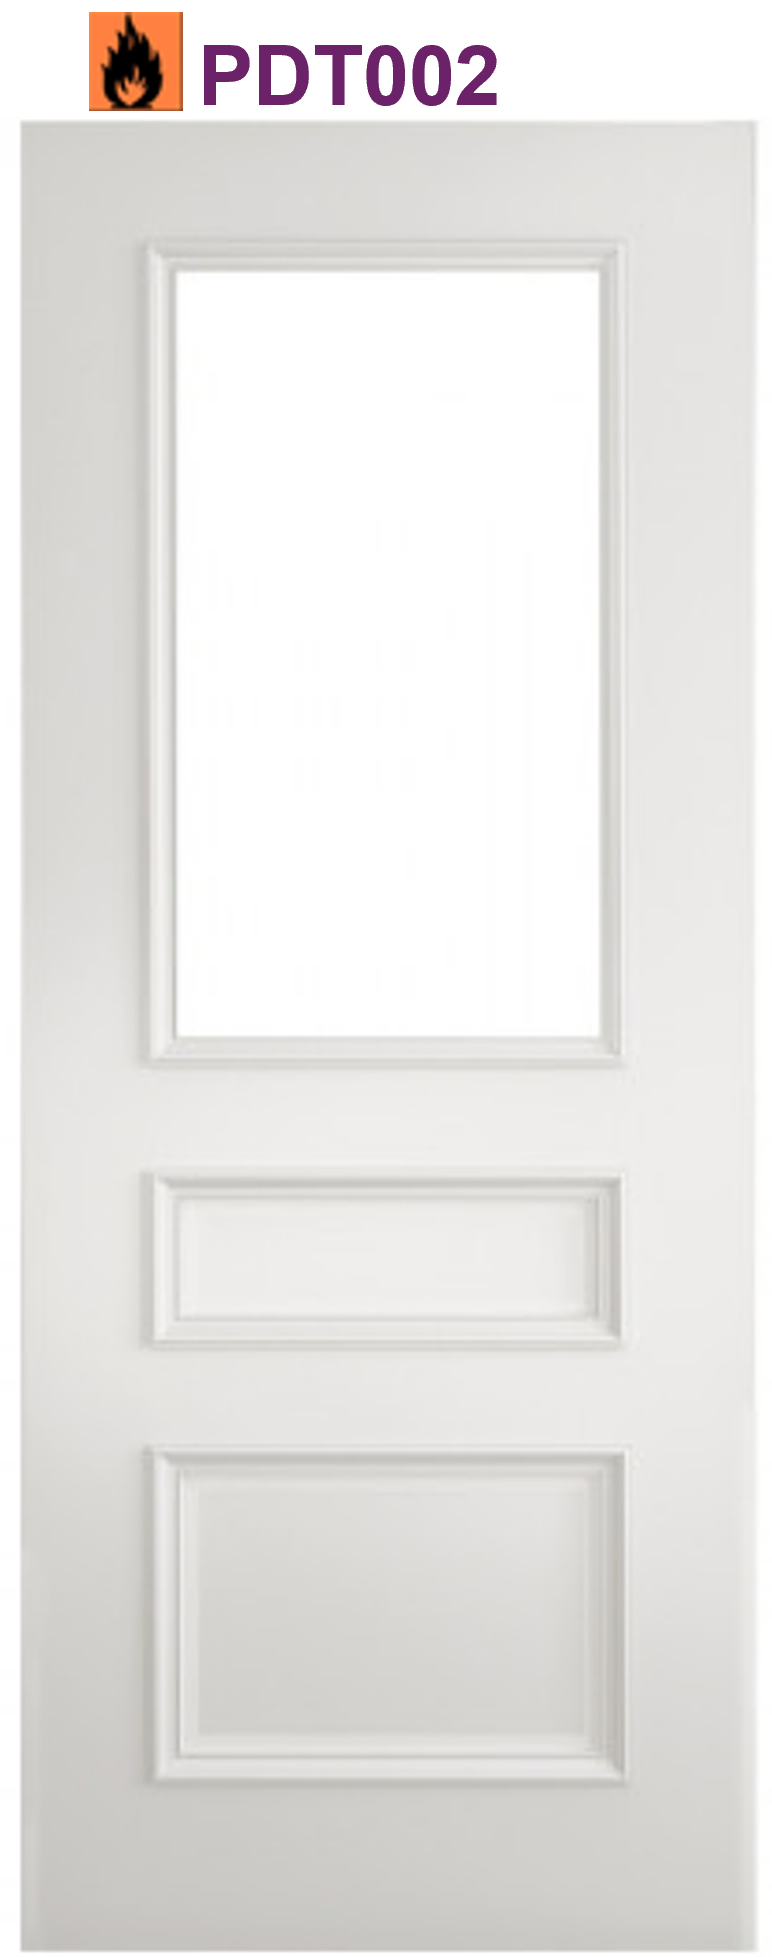 windsor glazed white primed internal door manchester